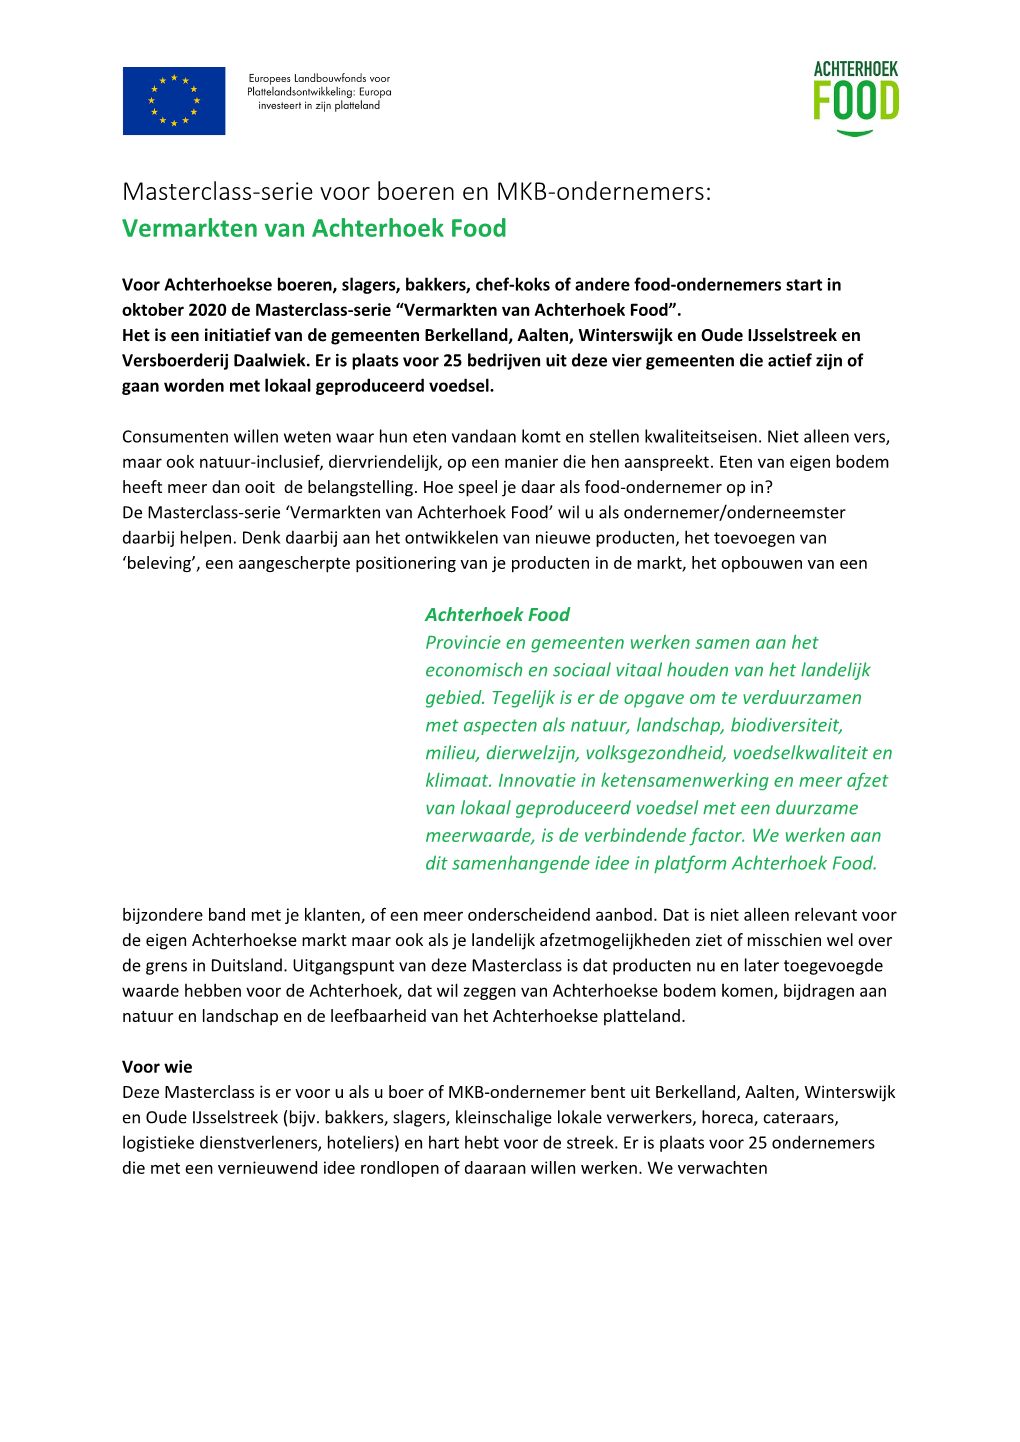 Masterclass-Serie Voor Boeren En MKB-Ondernemers: Vermarkten Van Achterhoek Food